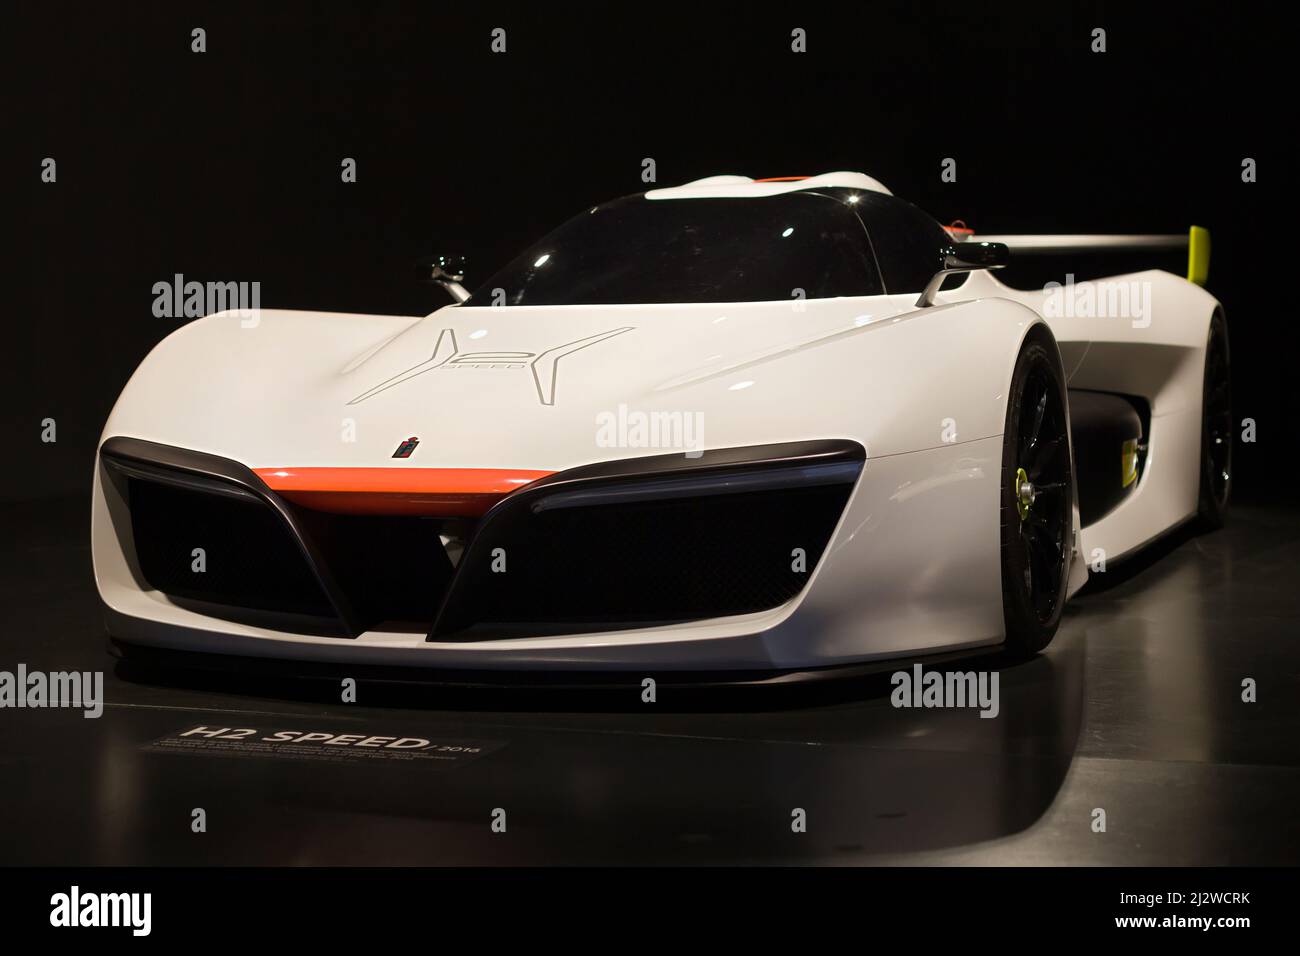 Turin, Italie - 14 août 2021: Pininfarina H2 Speed présenté au Musée national de l'automobile (MAUTO) à Turin, Italie. Banque D'Images